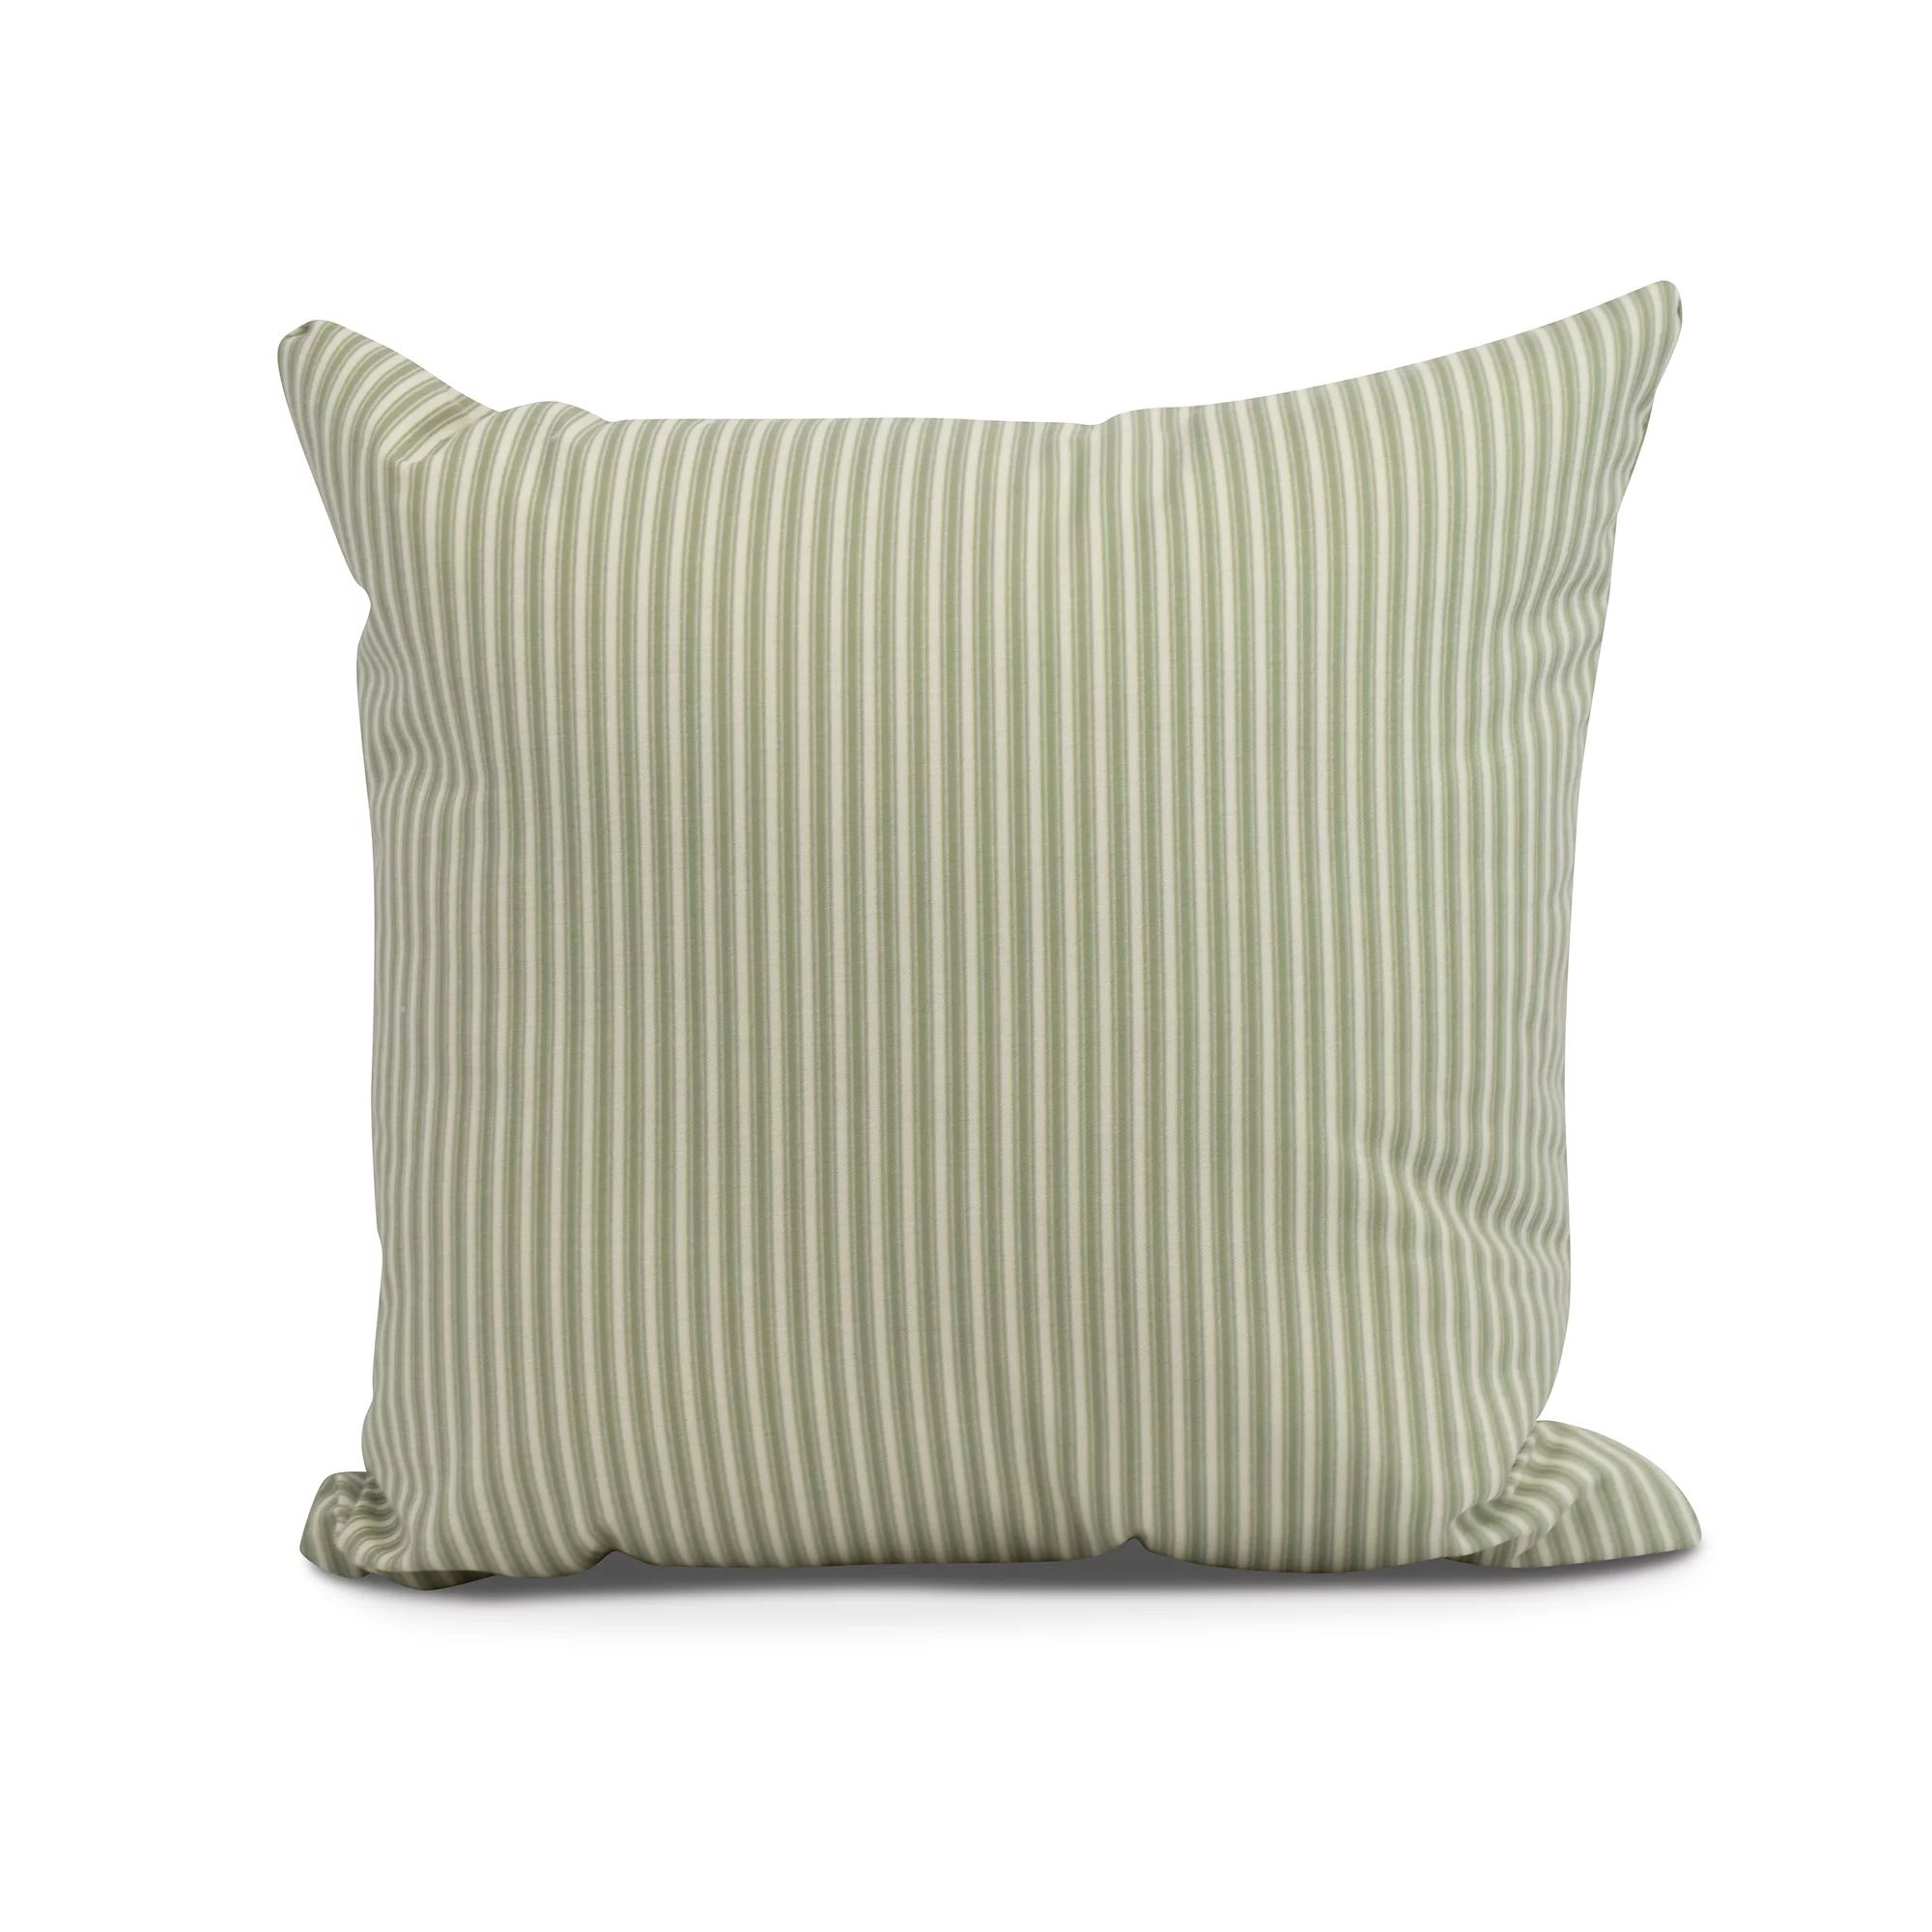 Simply Daisy, 16" x 16" Ticking Stripe Outdoor Pillow, Green - Walmart.com | Walmart (US)